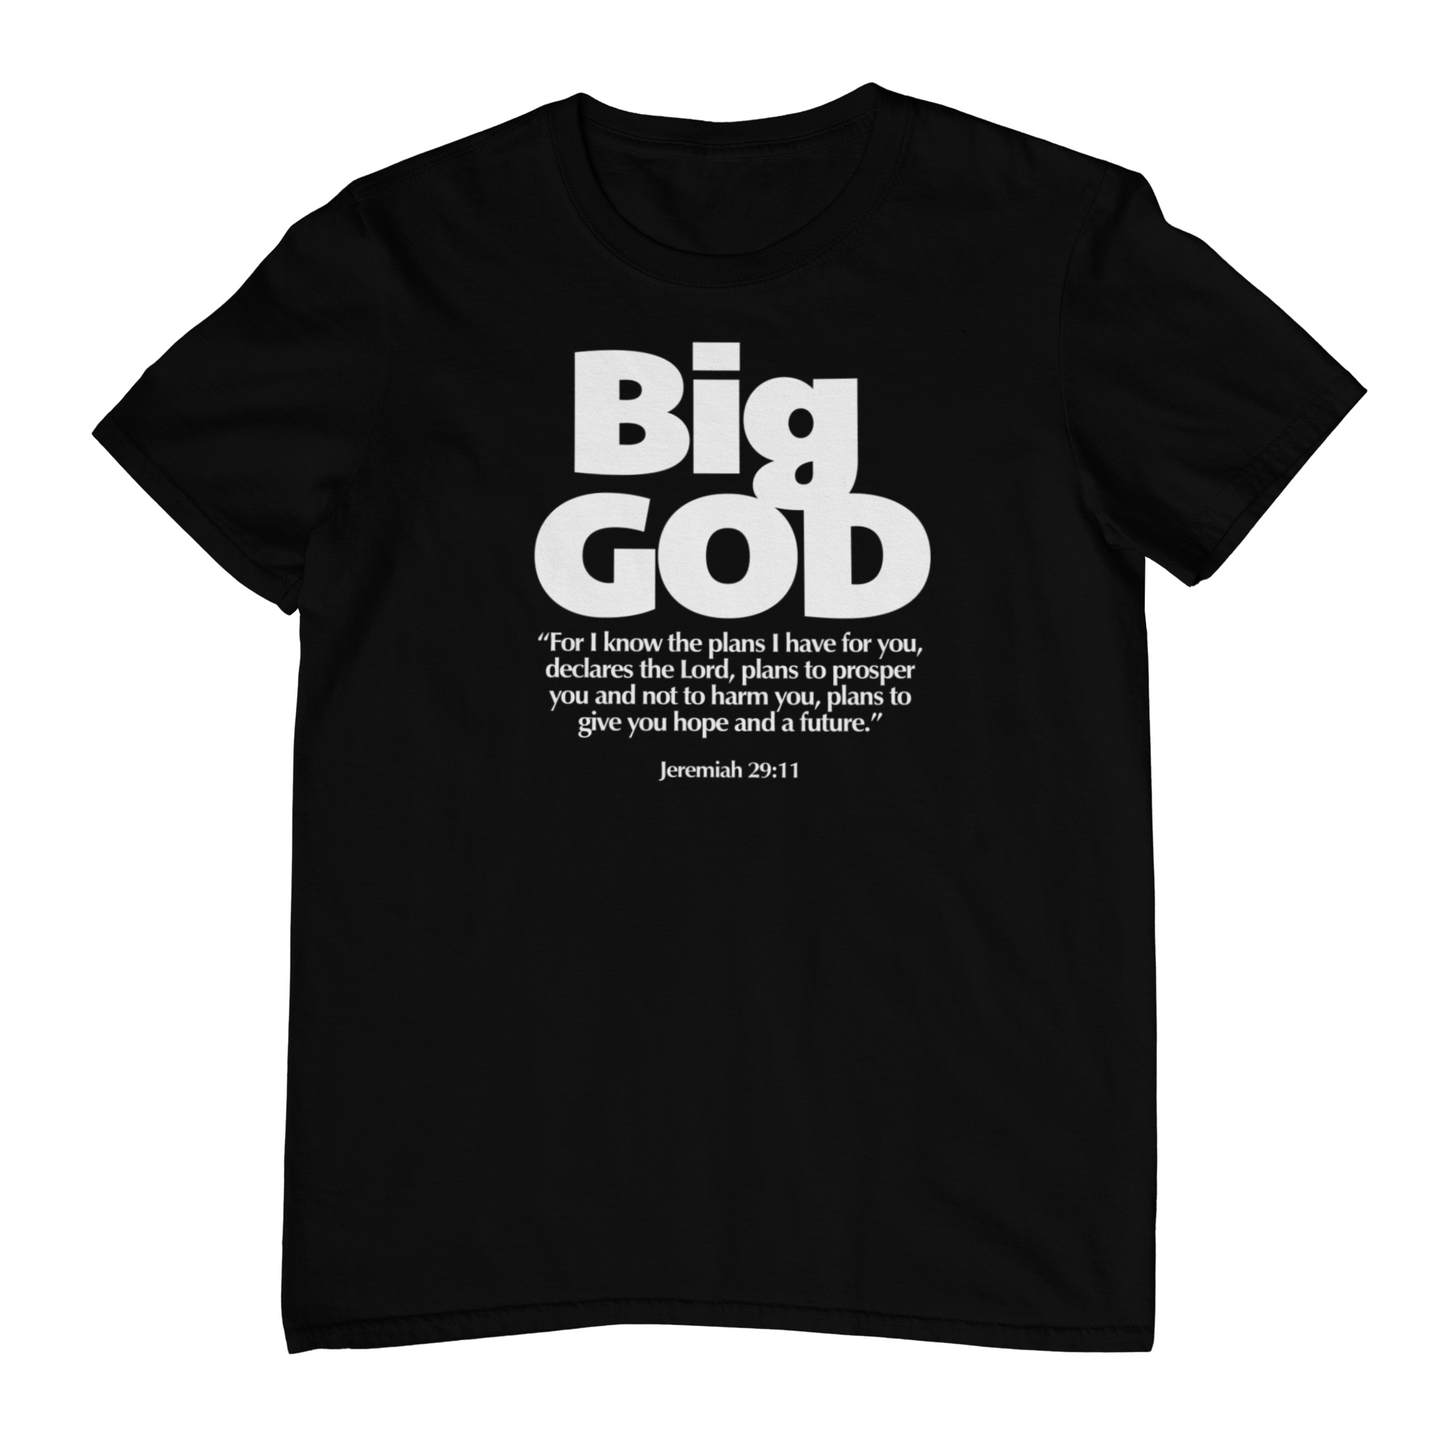 Big God Tshirt - Black & White